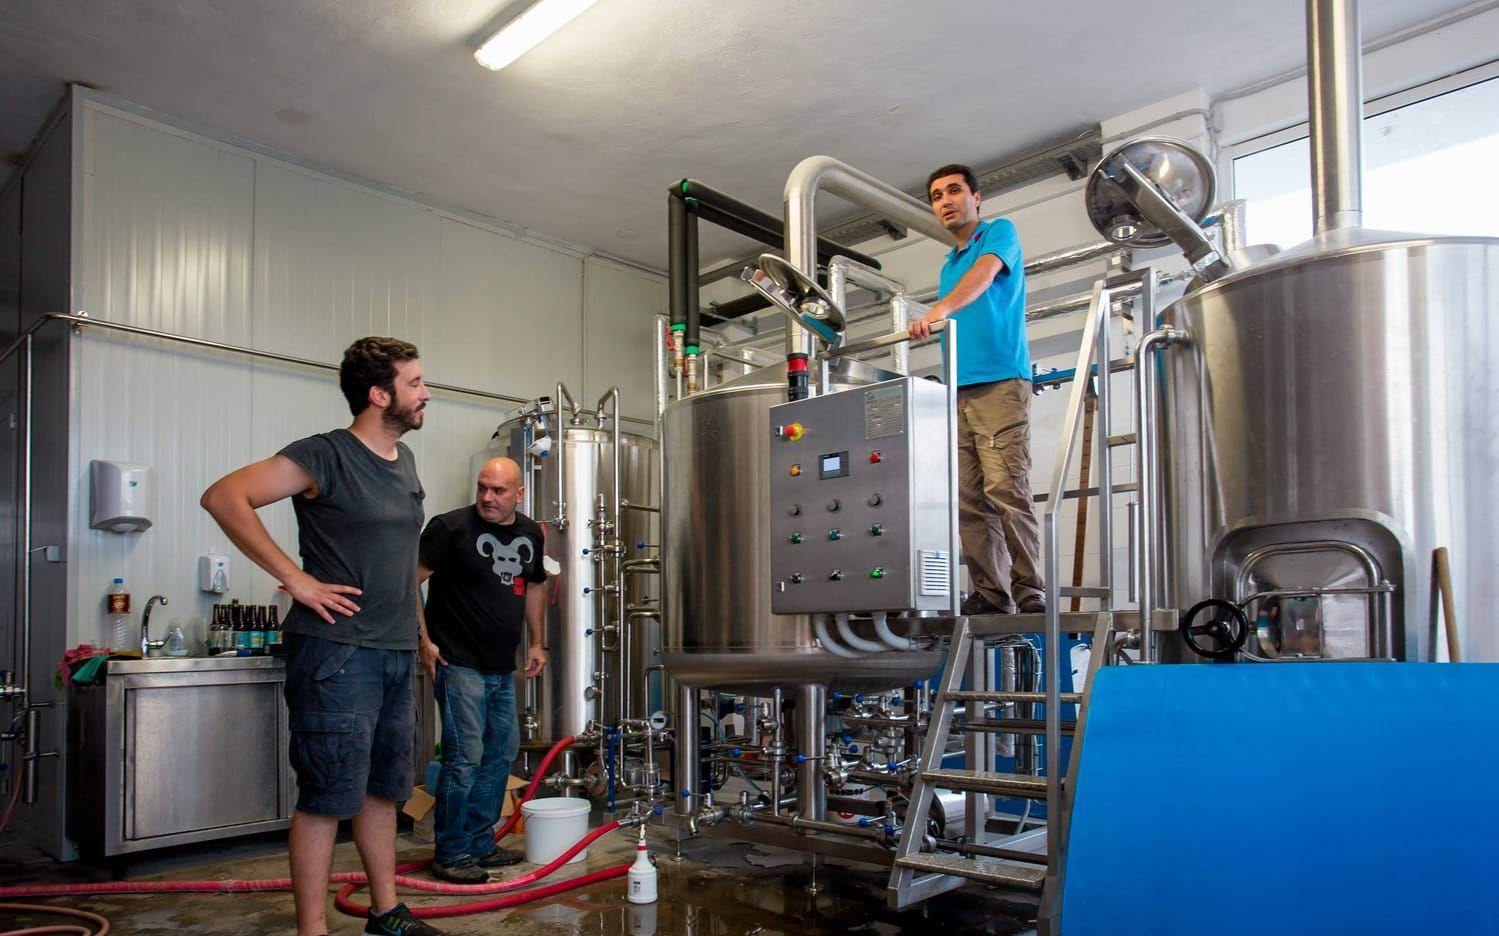 Från vänster: Theodoros Bizios, Vassilis Zegos och Ioannis Papathanasiou arbetar i sitt bryggeri. Bild: Olof Ohlsson.